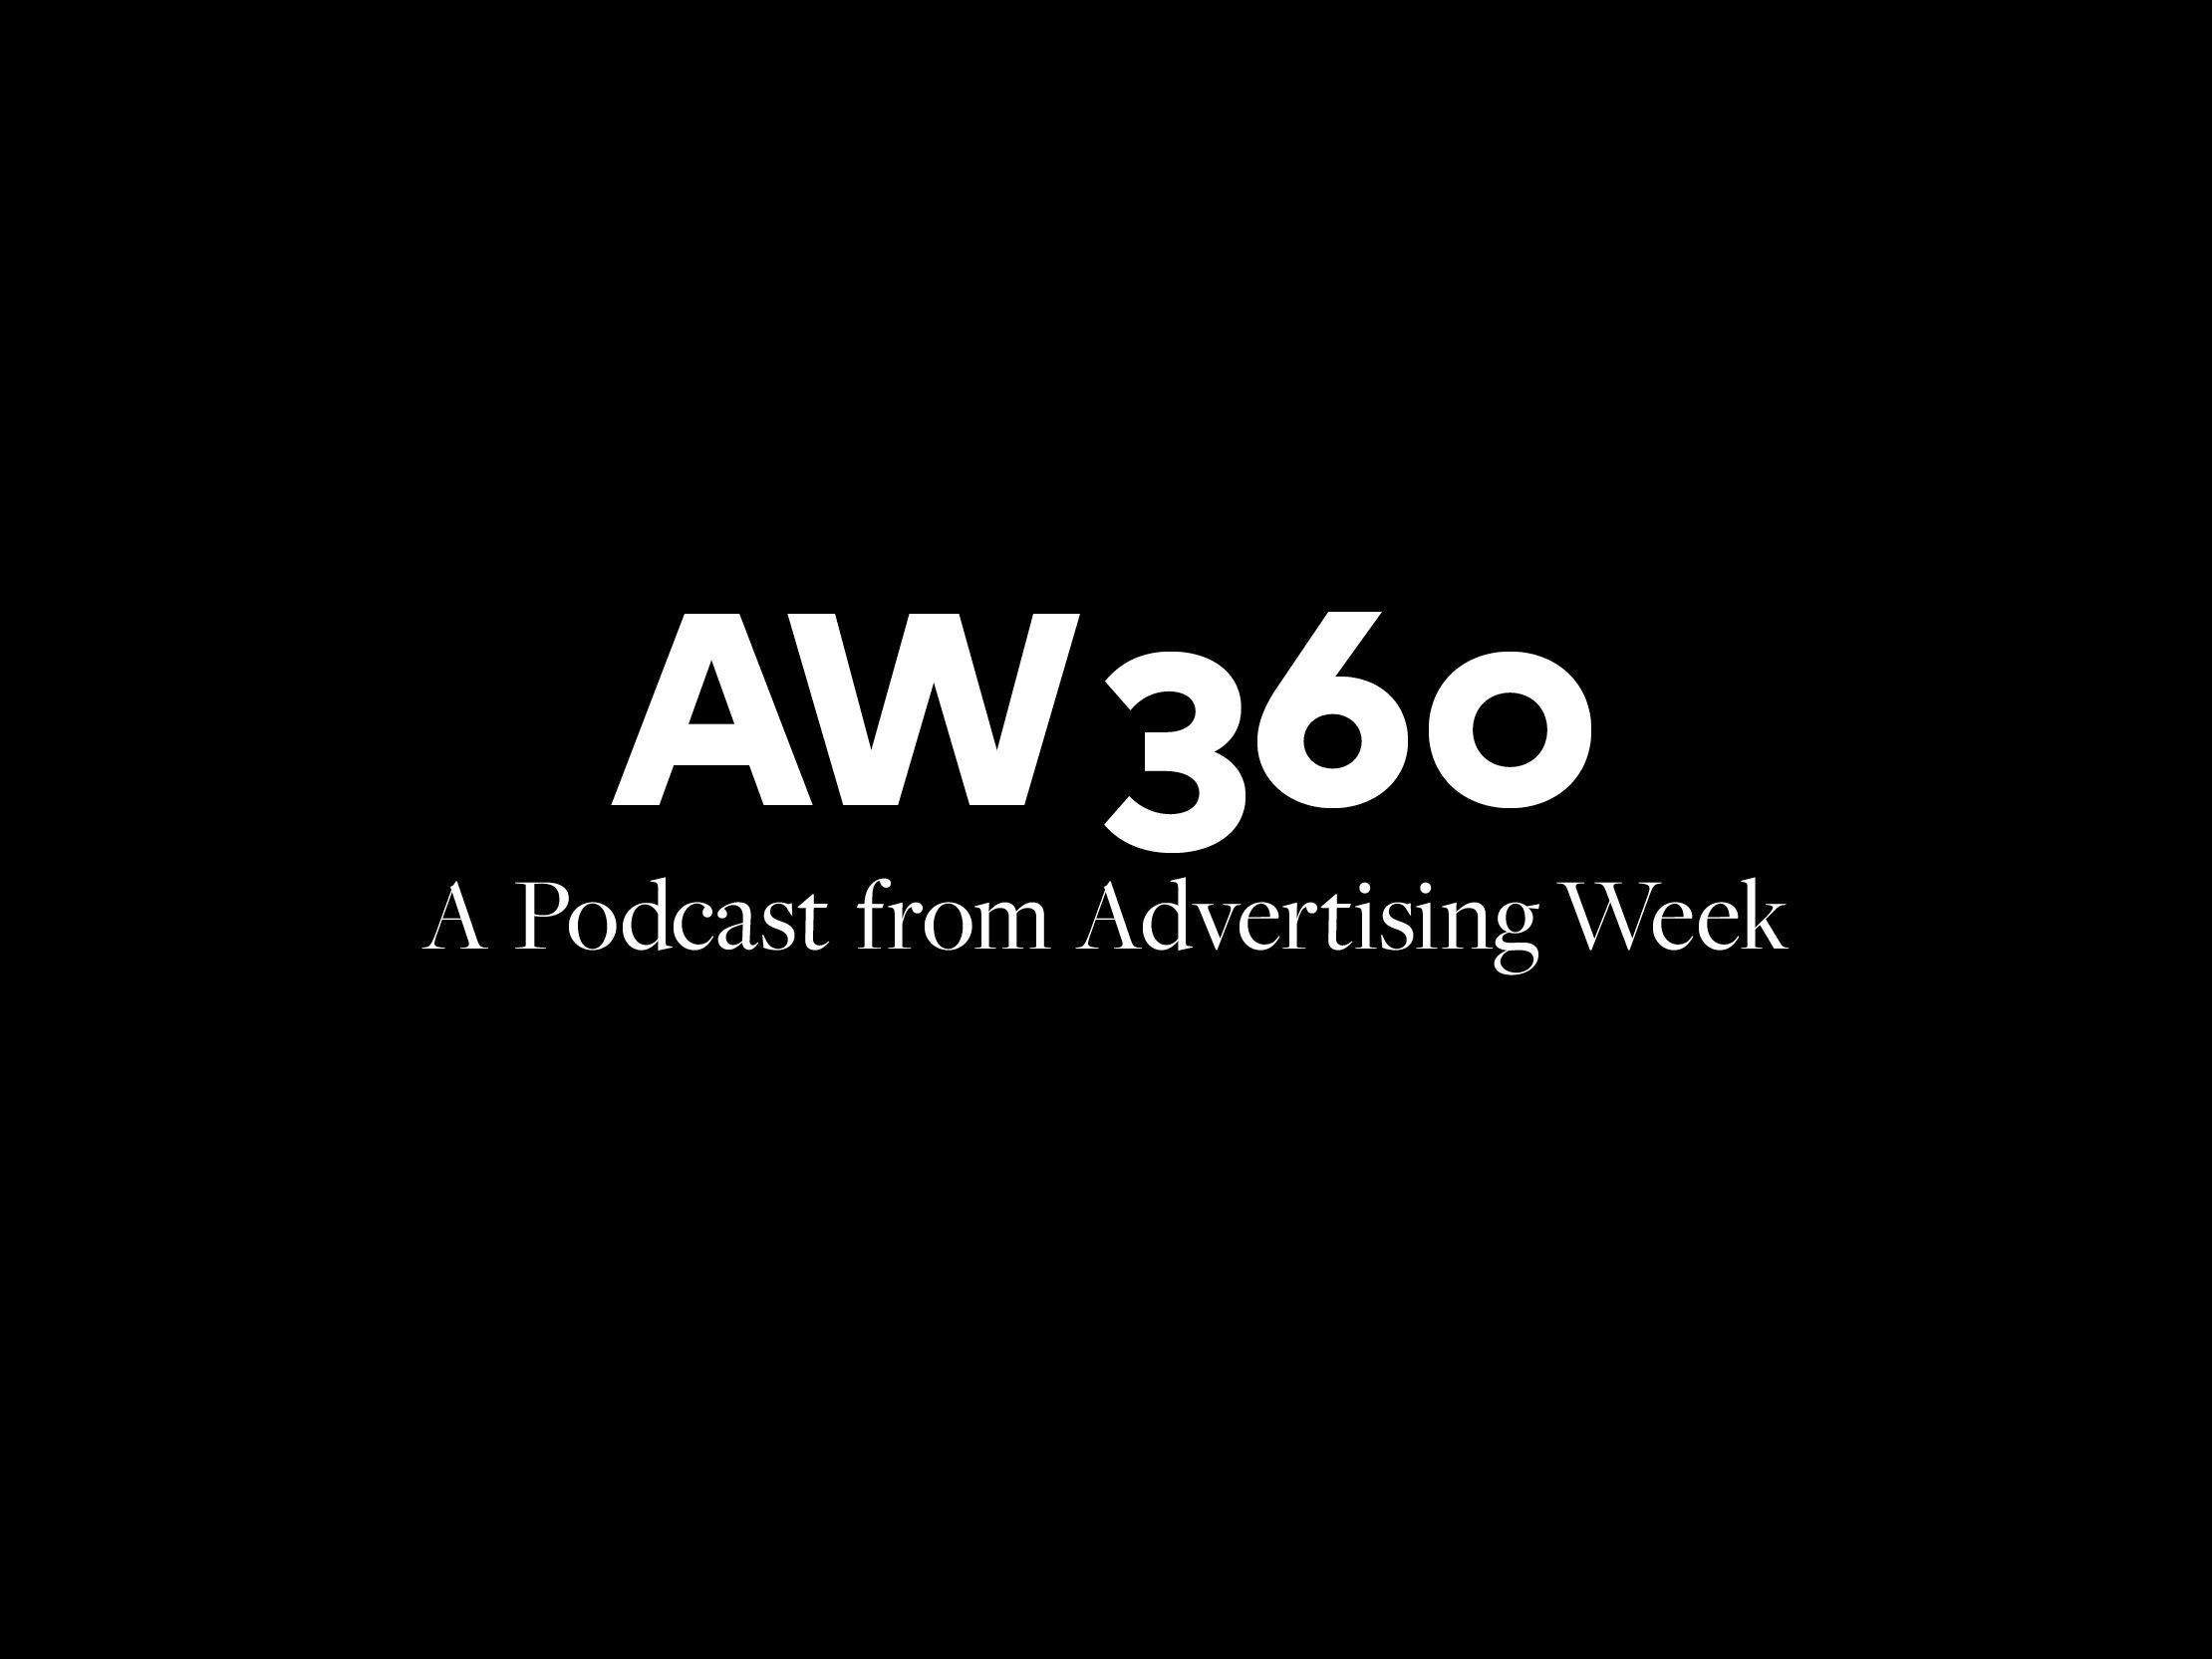 aw360-logo